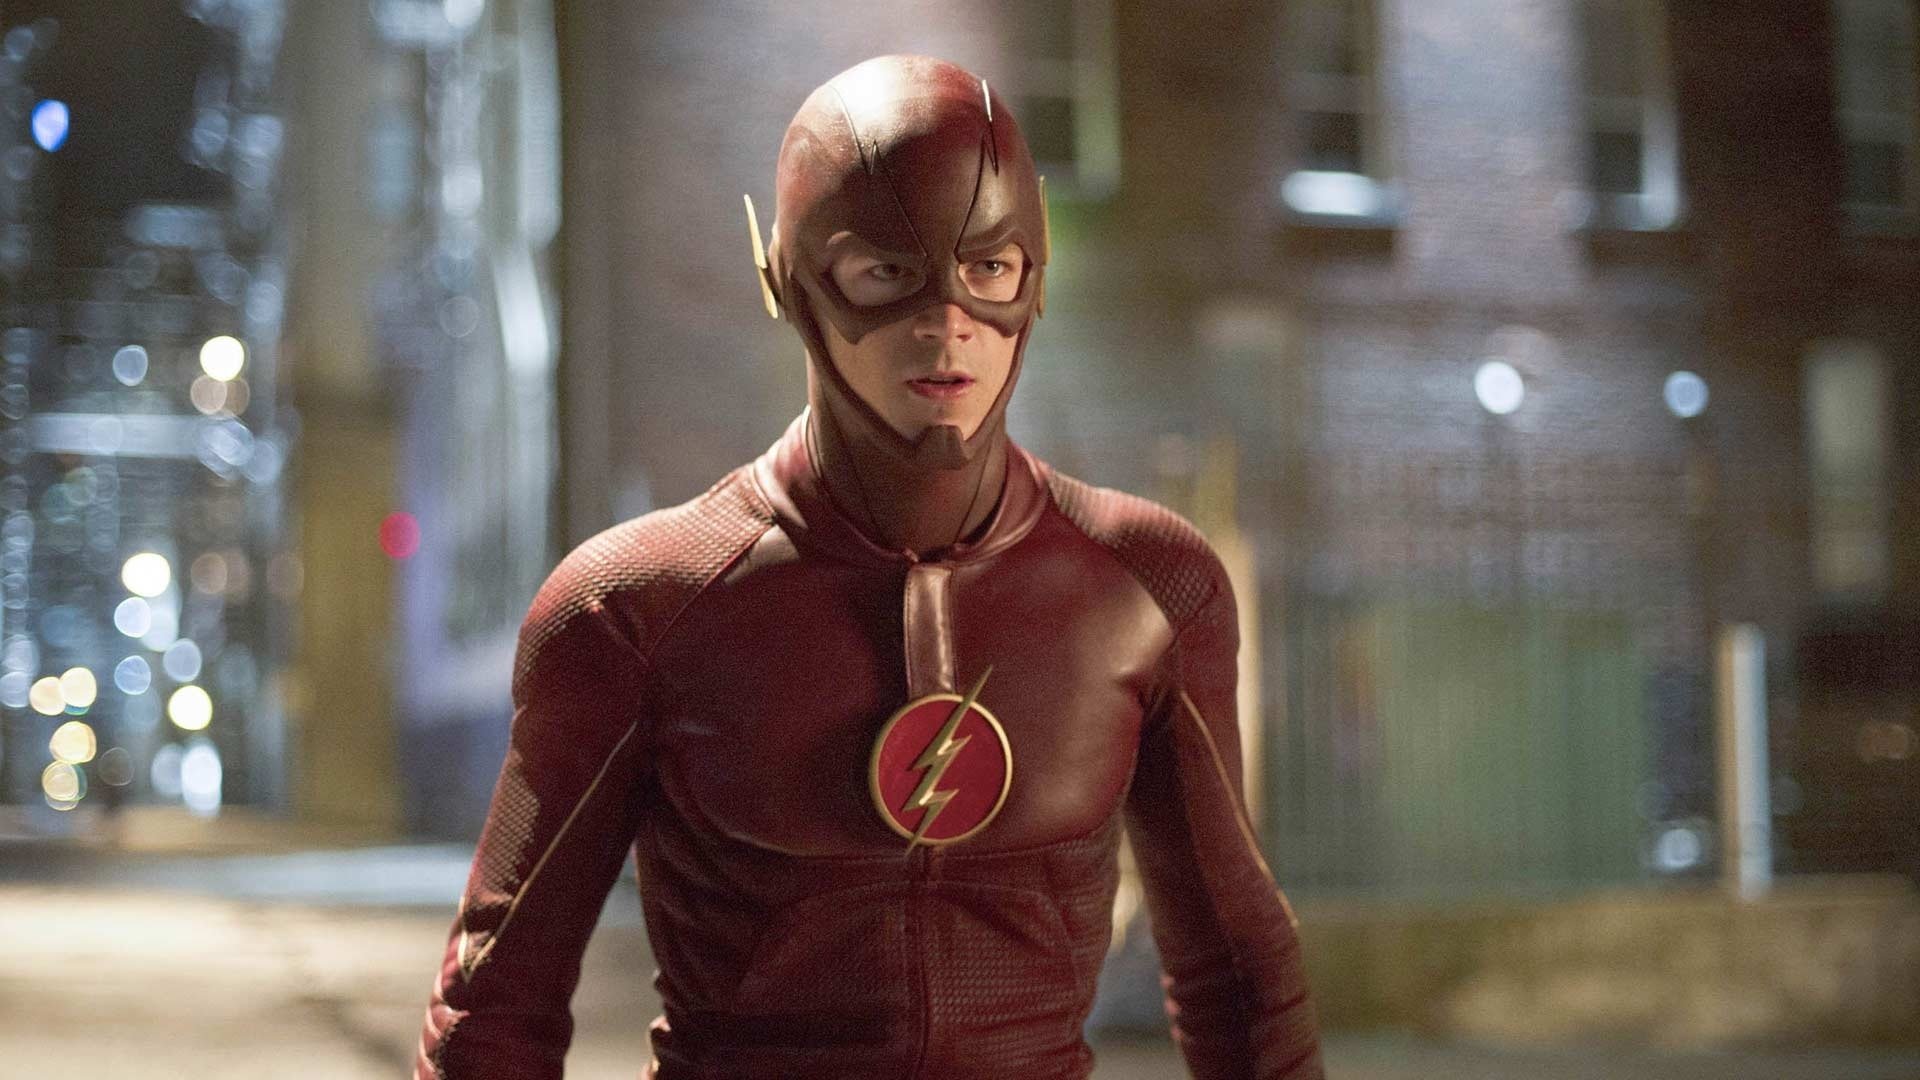 Watch The Flash Online - Stream Full Episodes